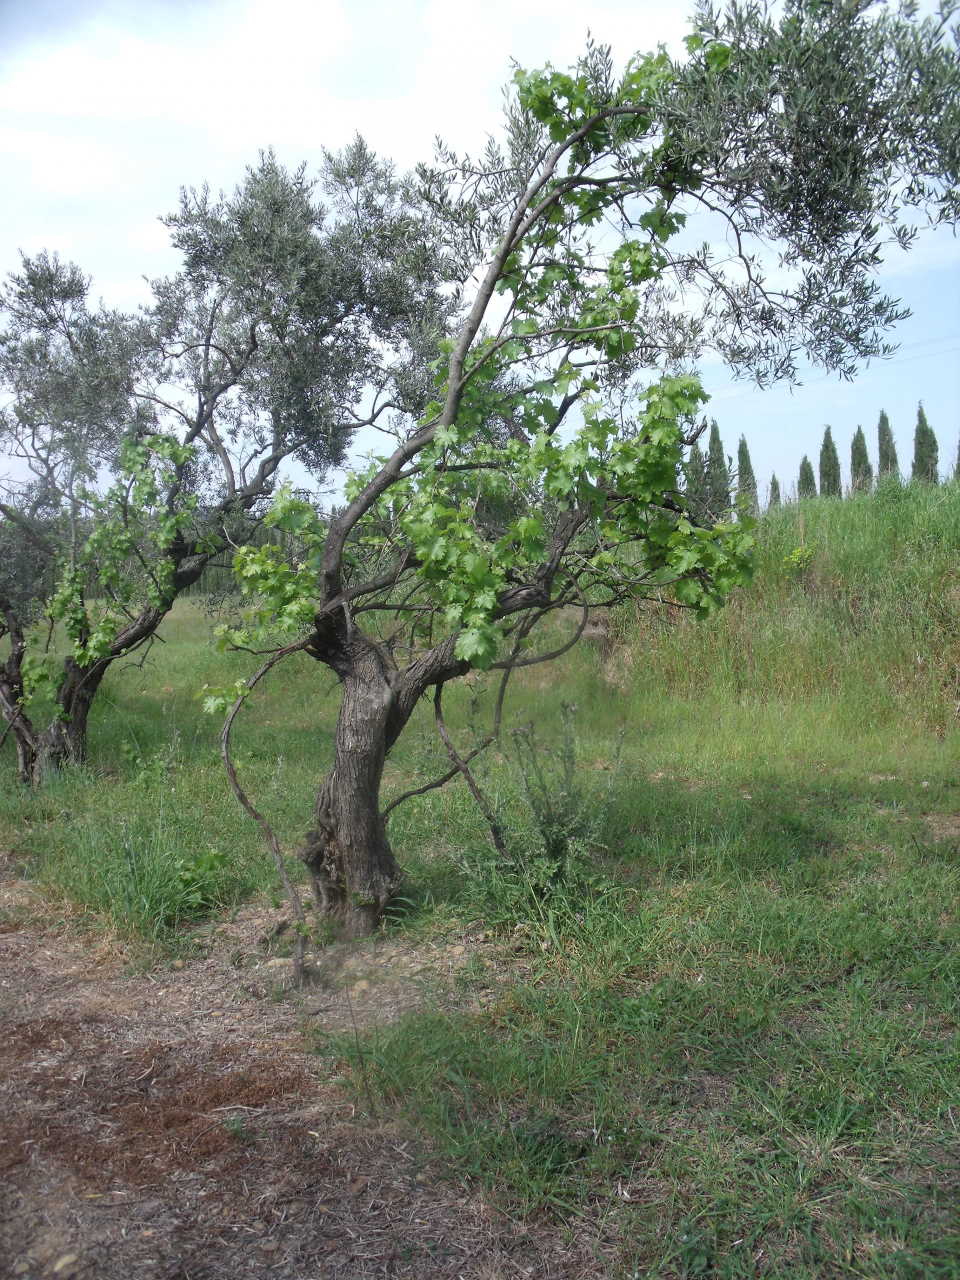 Vines trained up trees, Mas de Tourelles